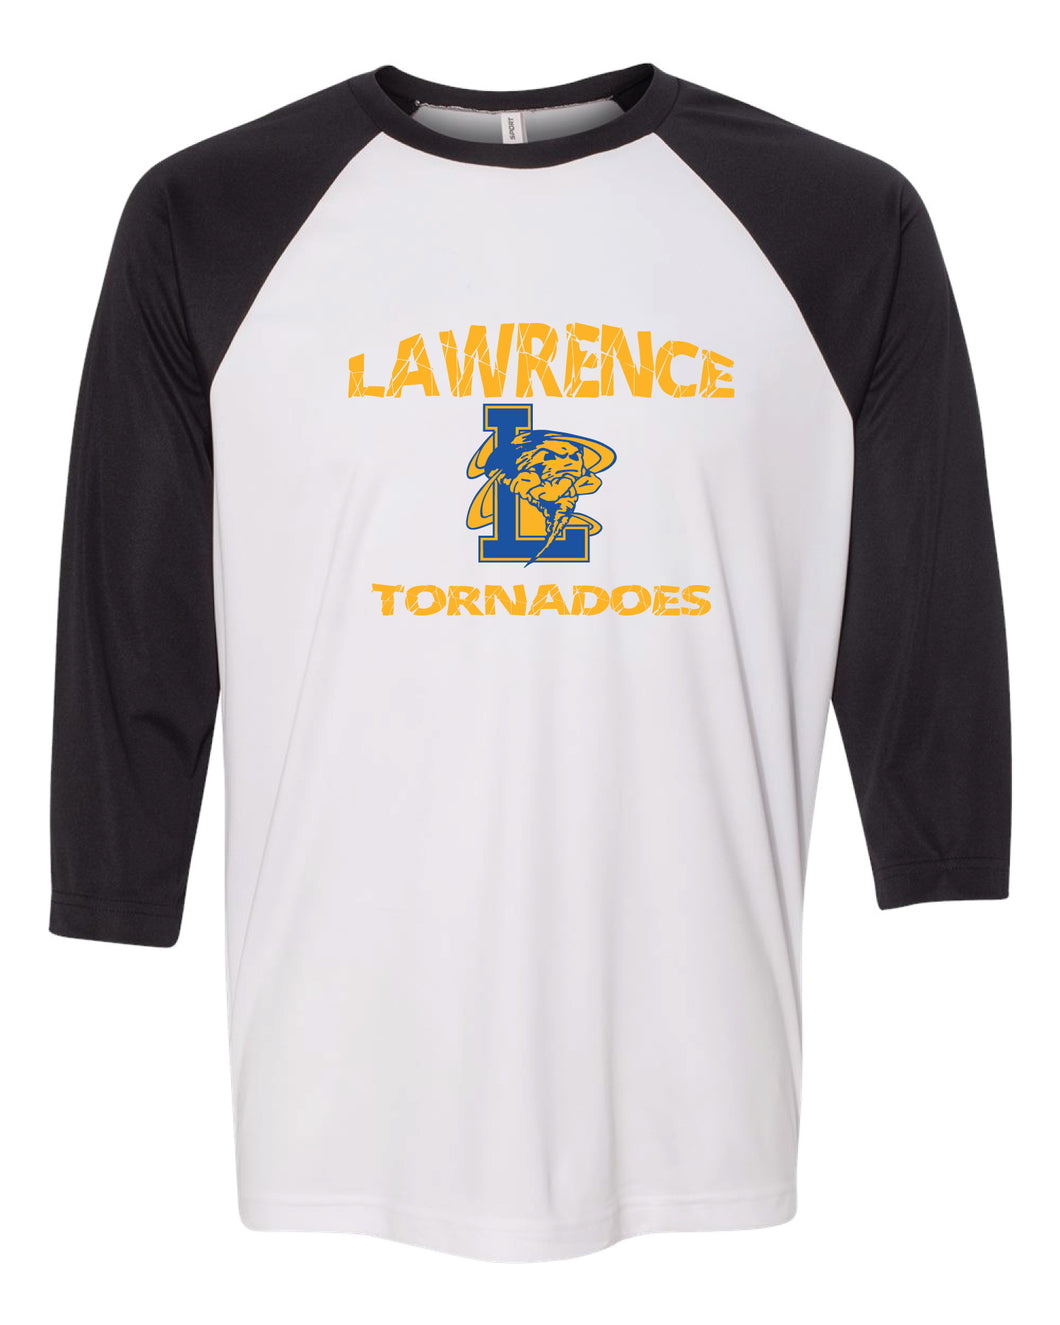 Lawrence HS Baseball Shirt - Black & White - 5KounT